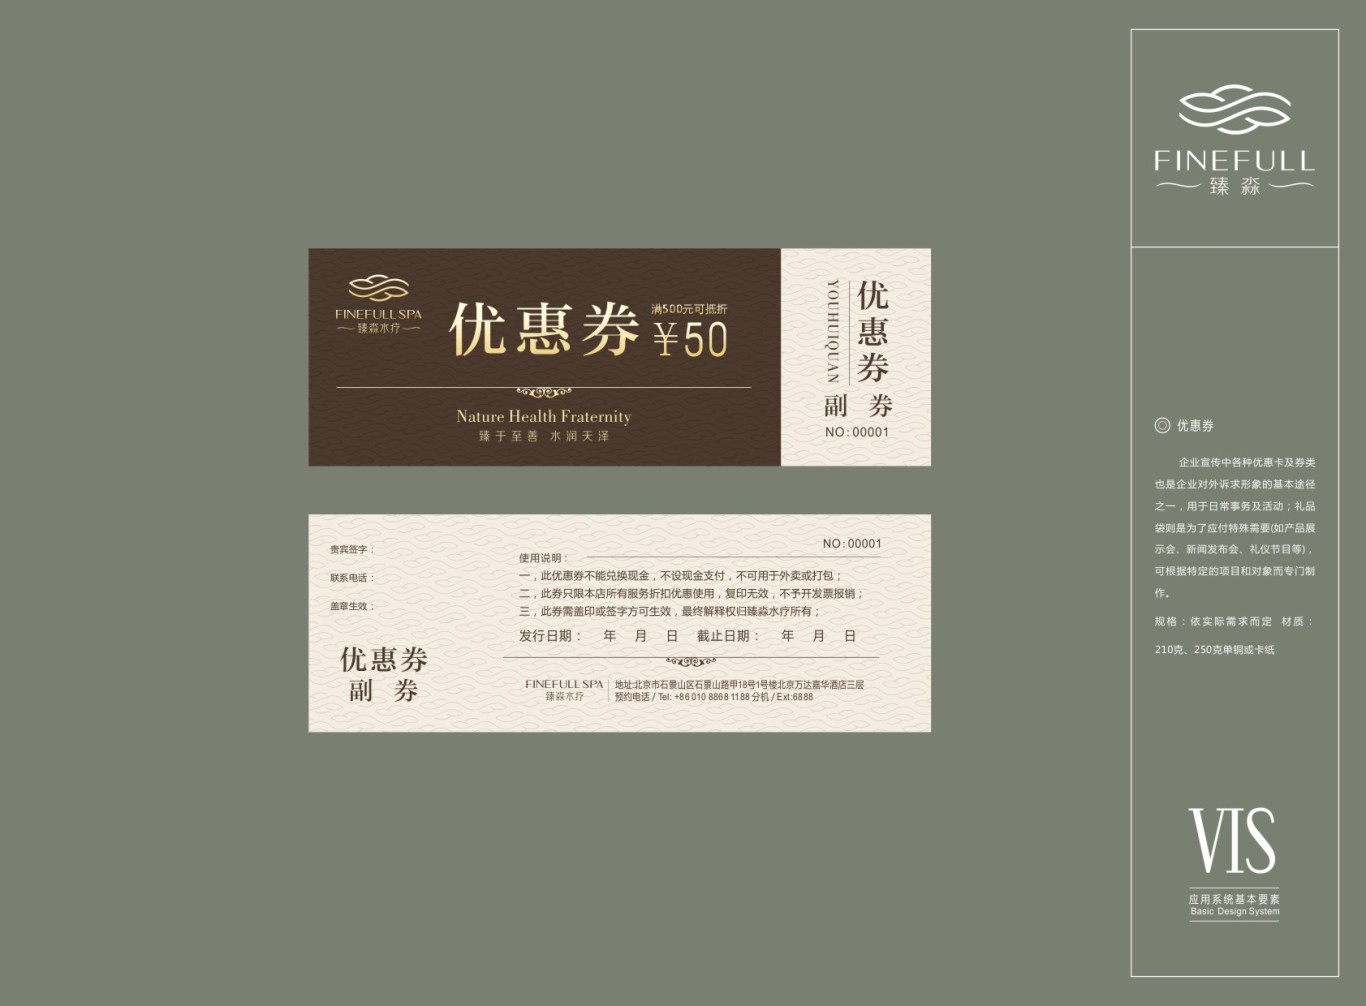 北京五星级FINEFULL-SPA水疗中心标志及VI设计图28